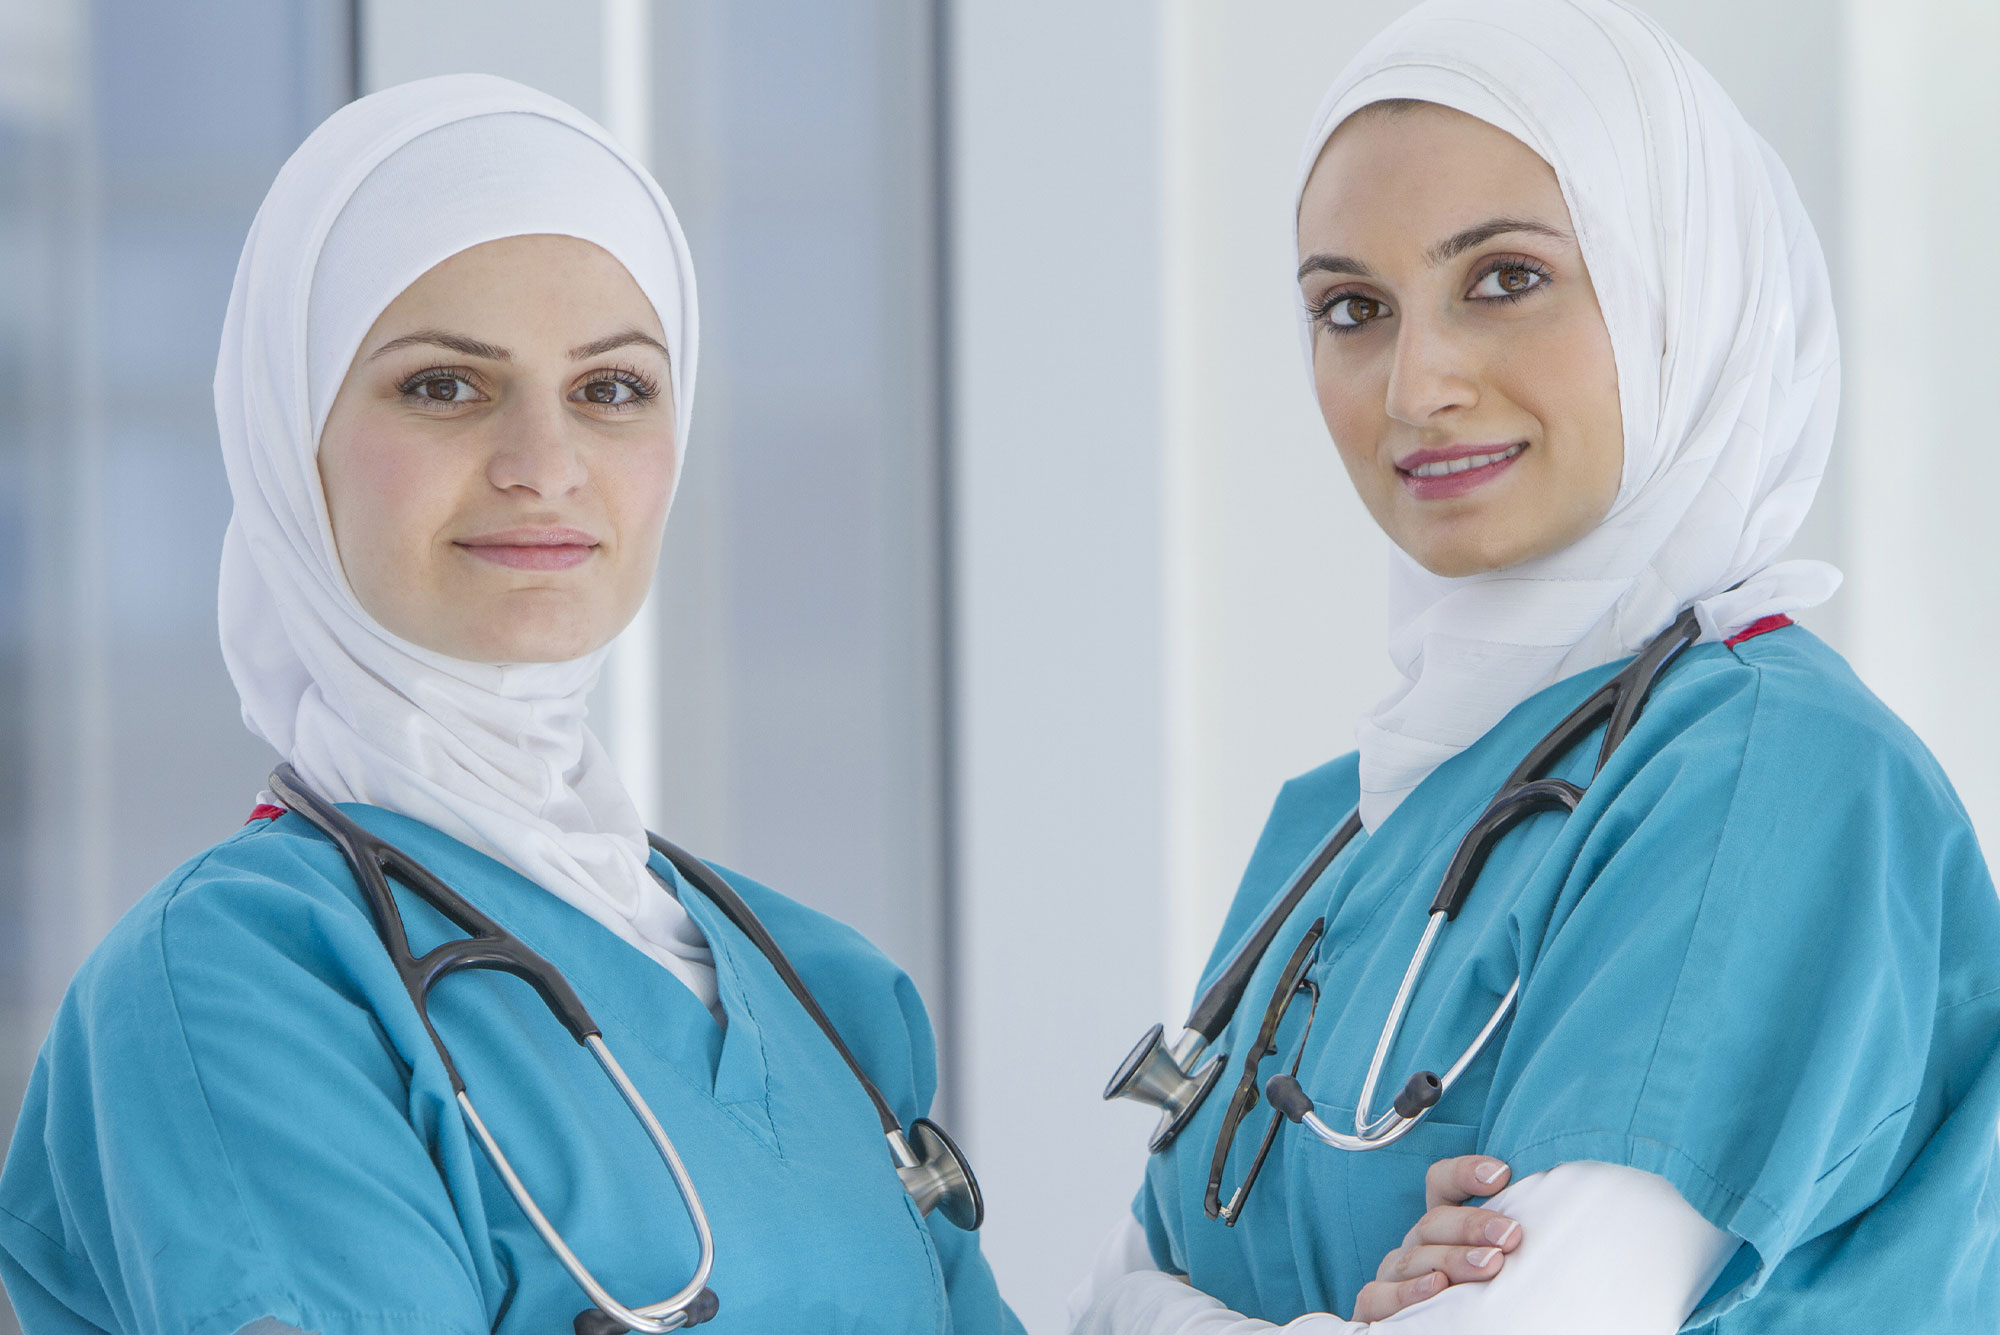 Two Muslim health workers